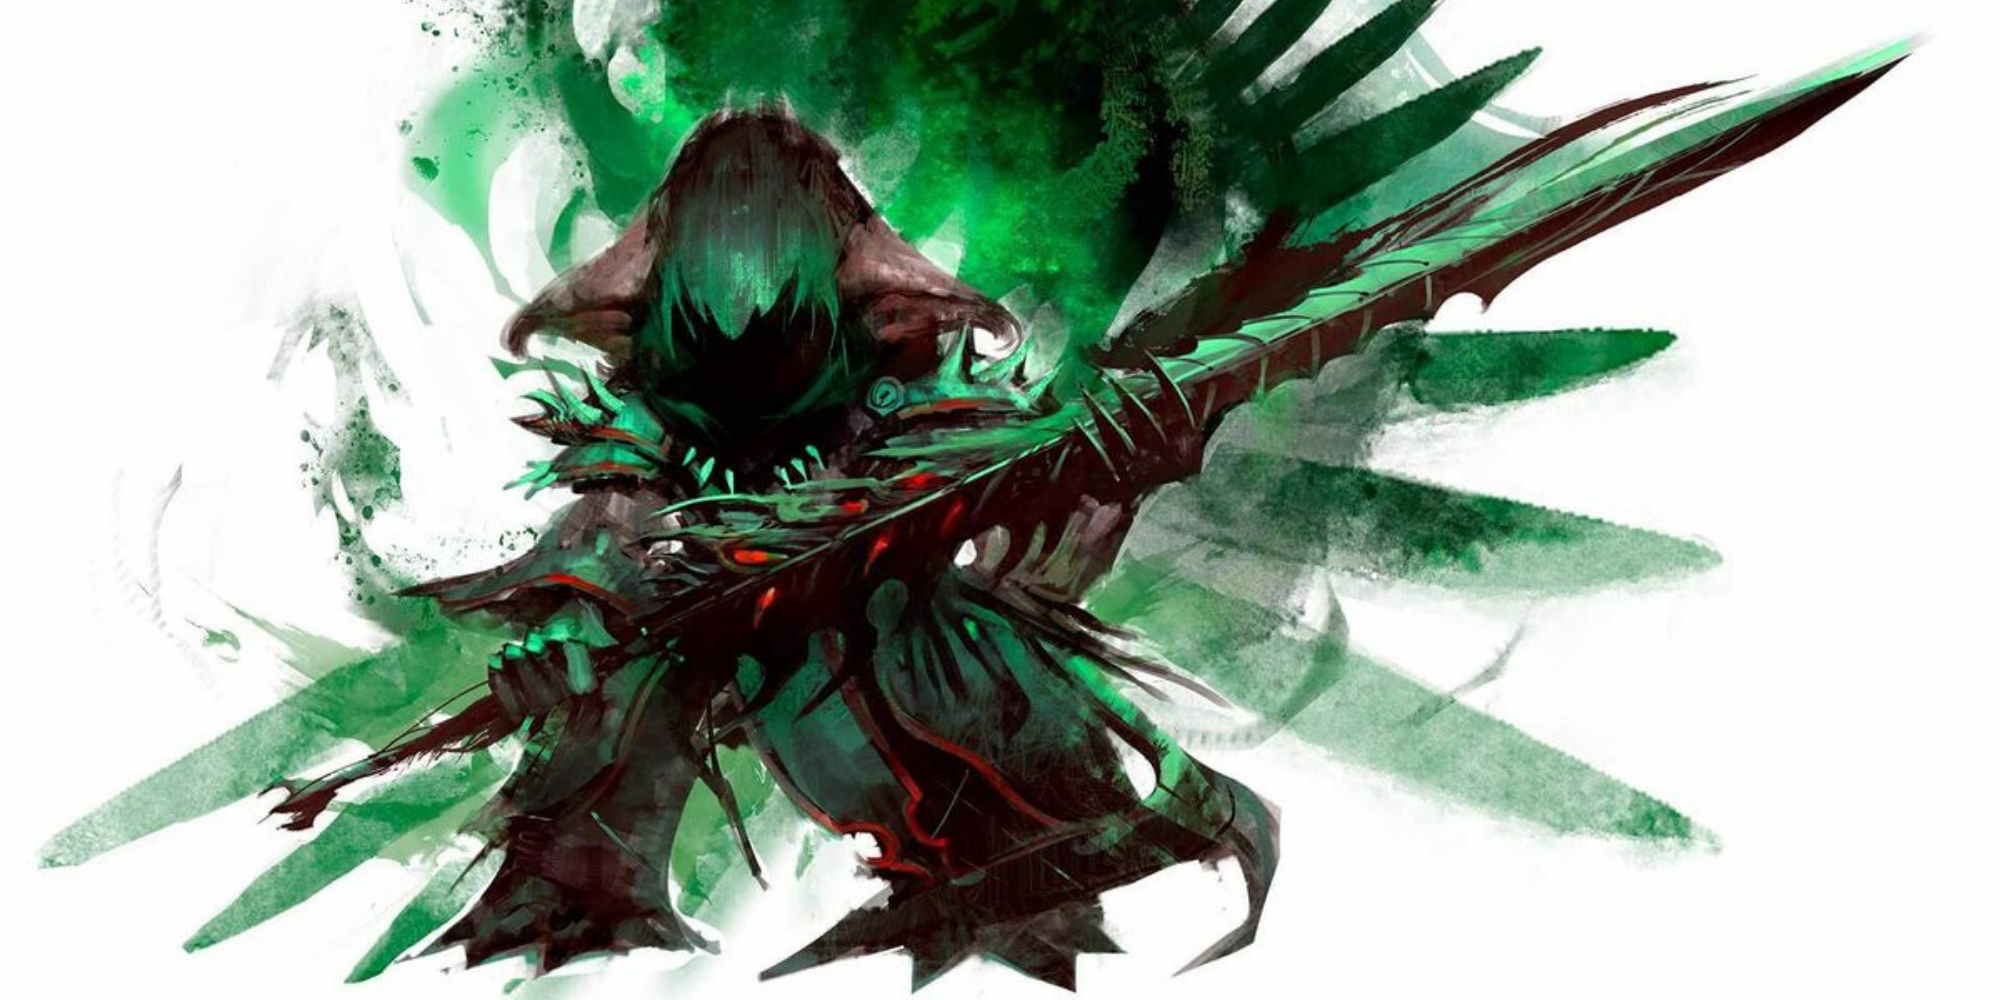 GW2 - Reaper (necromancer) official art